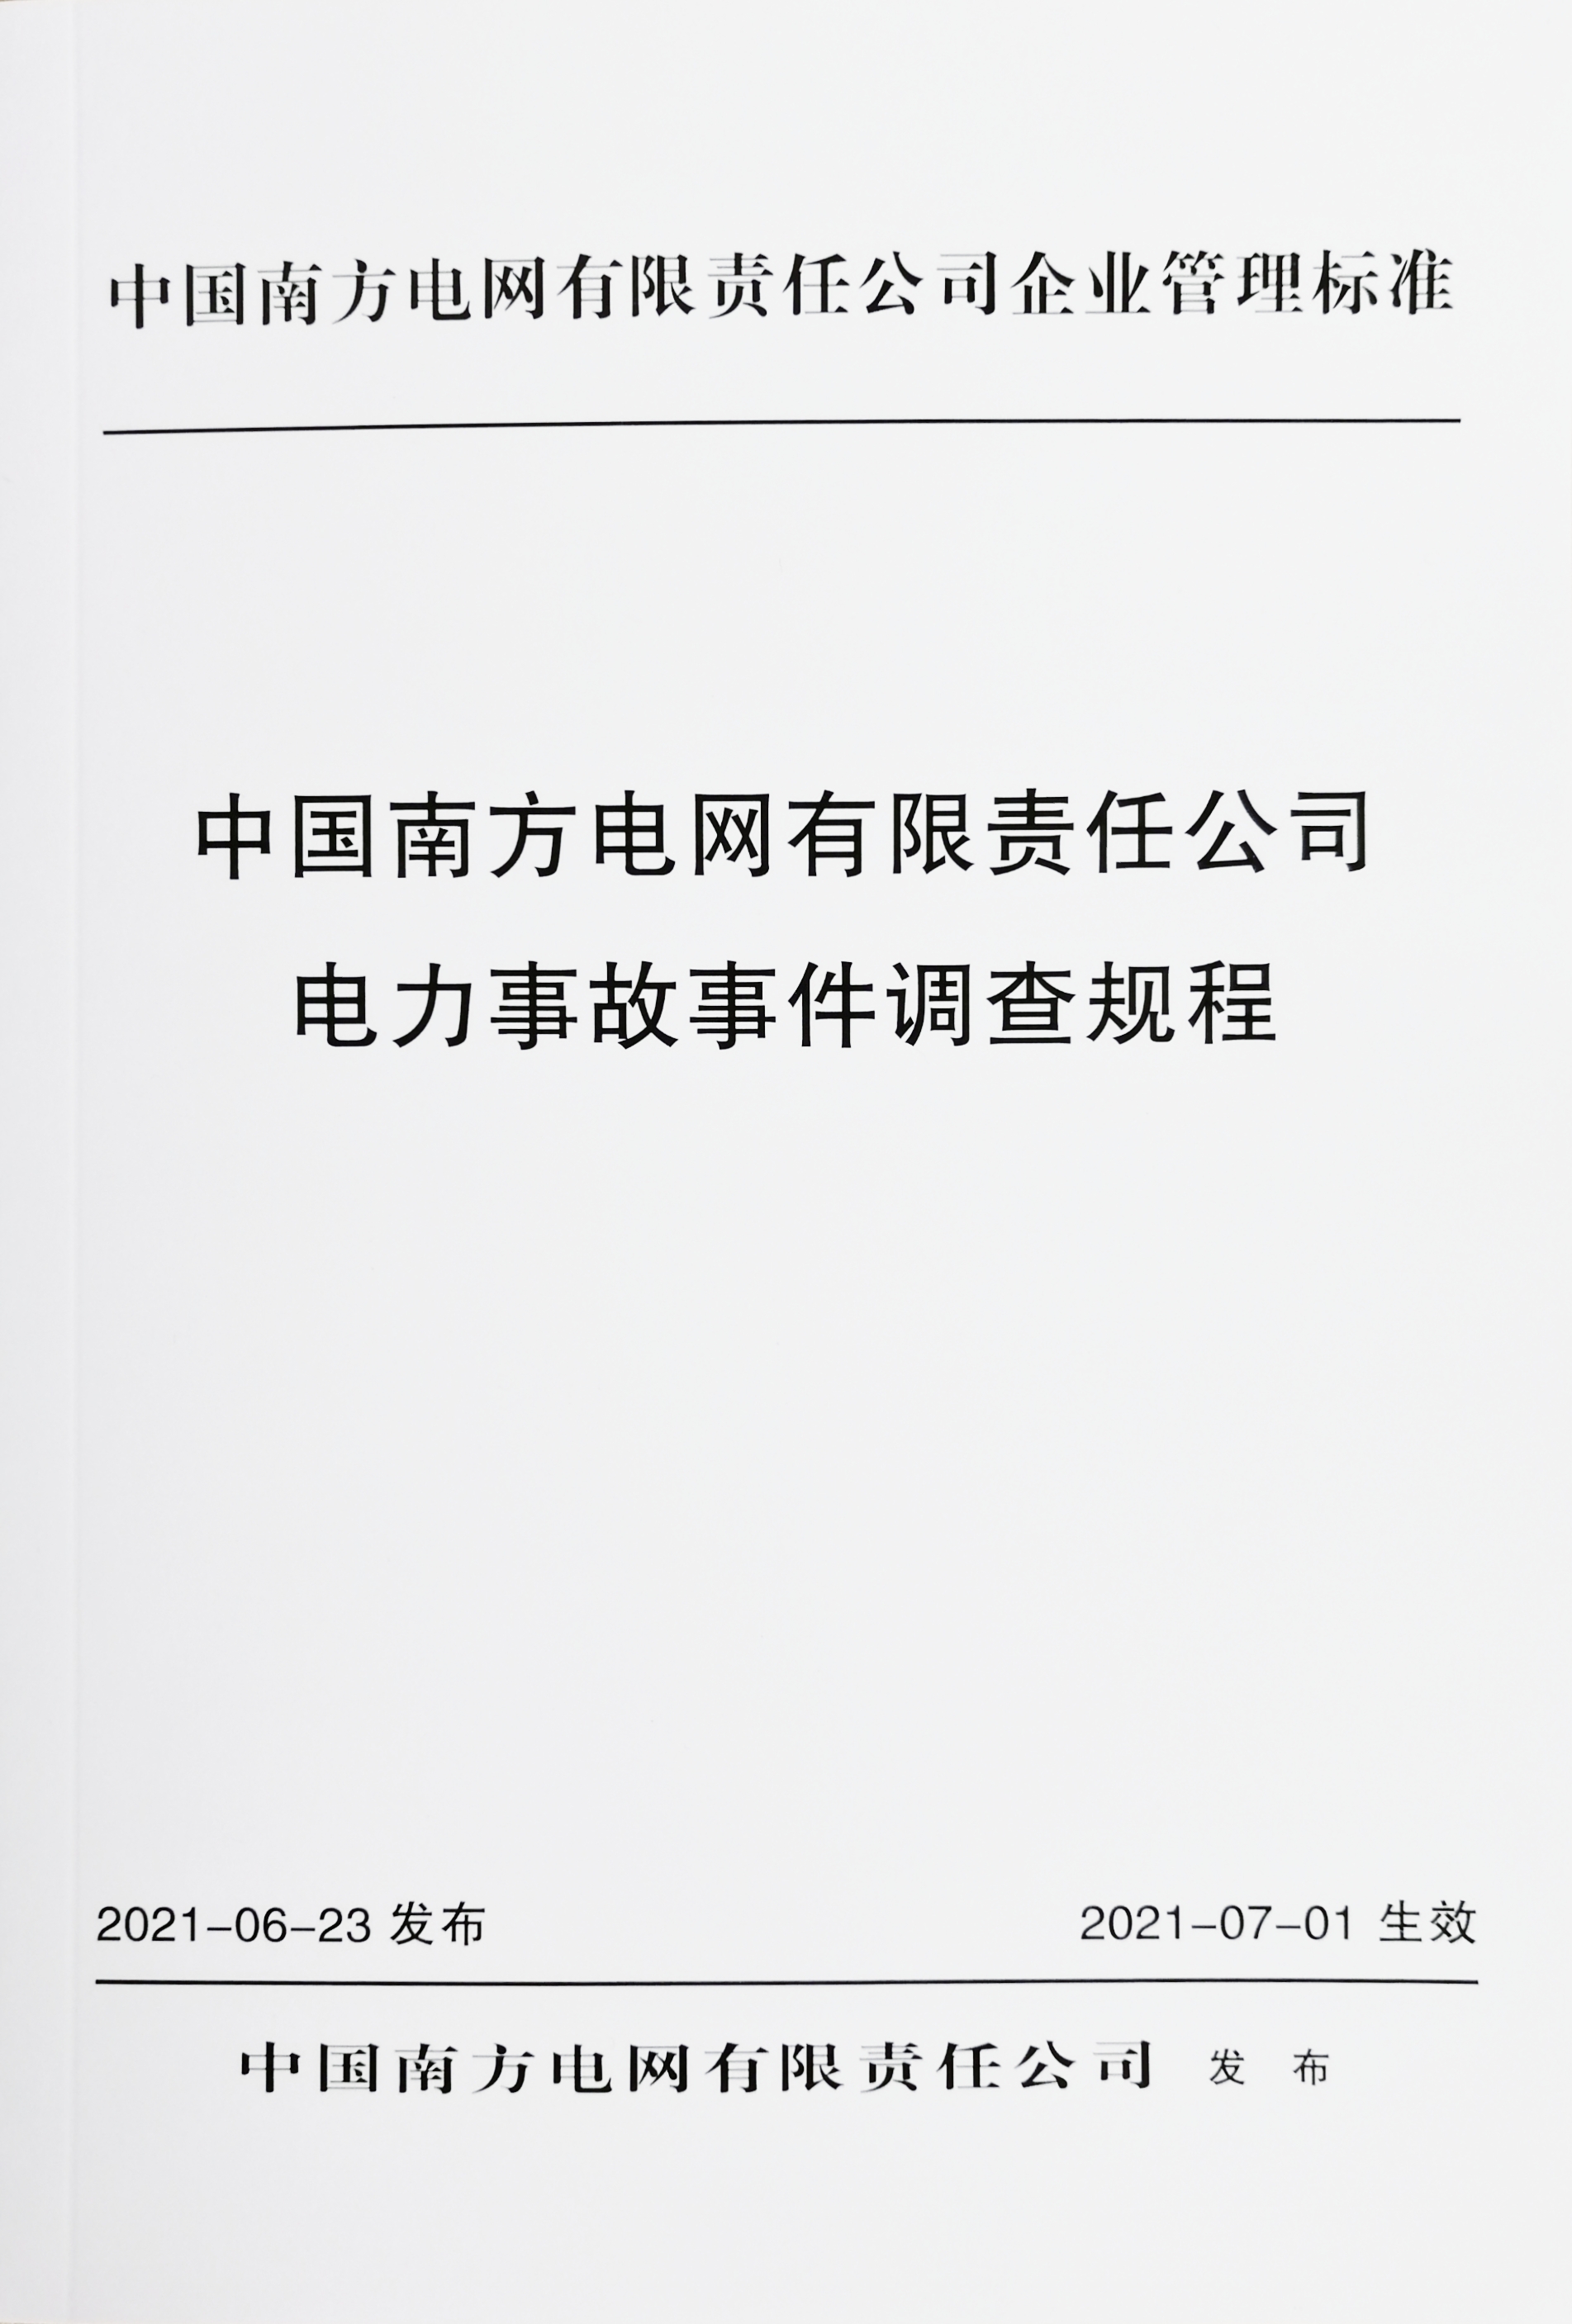 中国南方电网有限责任公司电力事故事件调查规程（2021年版）